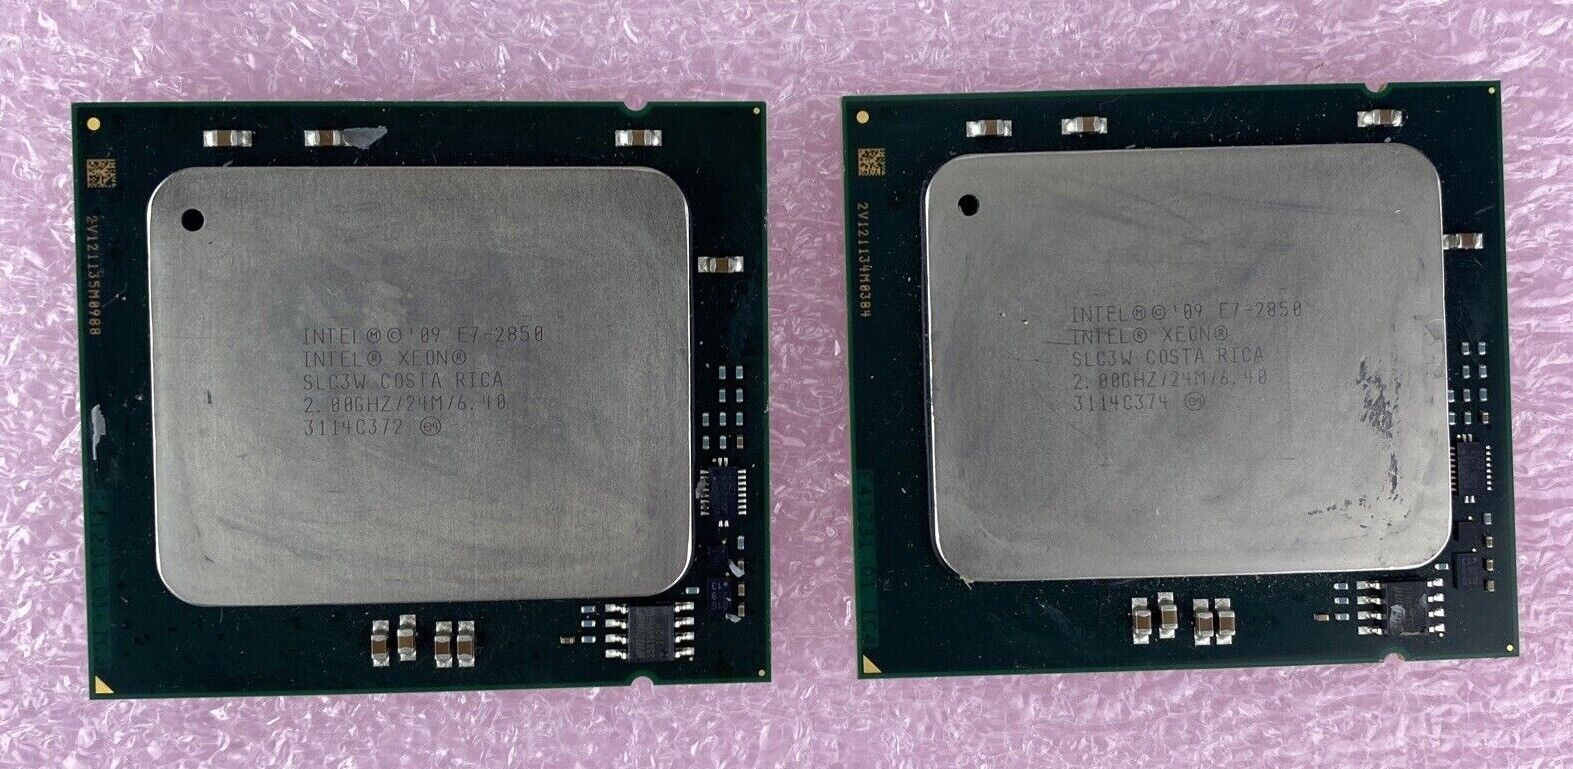 Lot of 2 Intel Xeon E7-2850 SLC3W 2GHz 24MB 10-Core LGA 1567 Server CPU 130W P4S